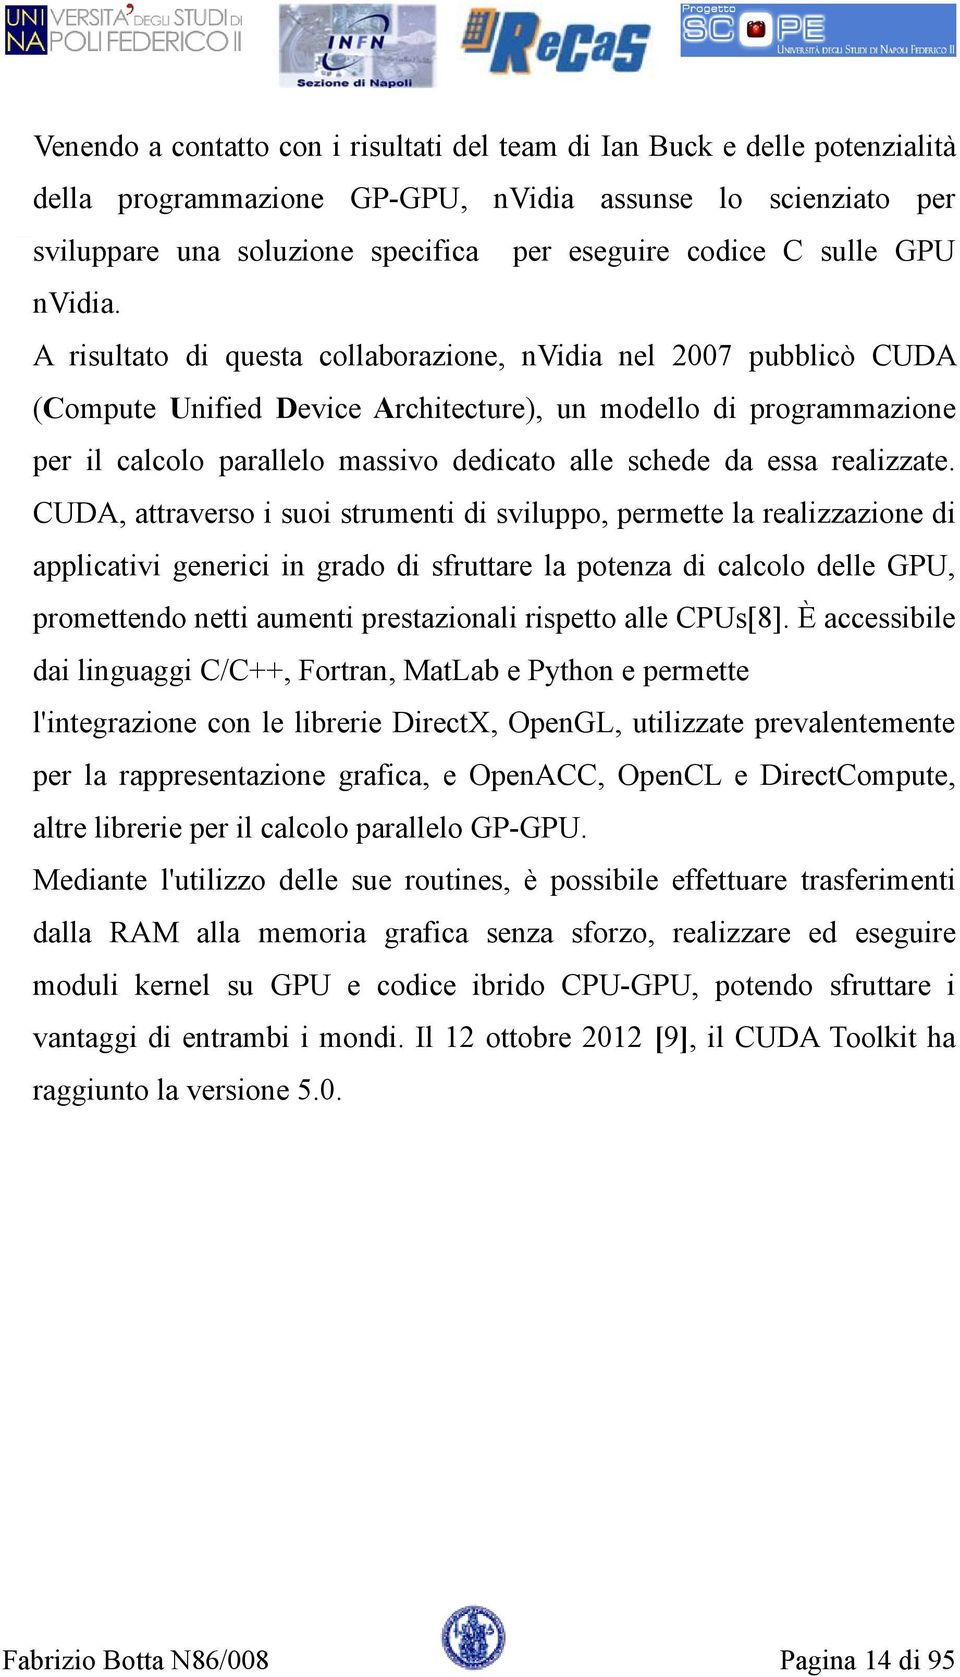 A risultato di questa collaborazione, nvidia nel 2007 pubblicò CUDA (Compute Unified Device Architecture), un modello di programmazione per il calcolo parallelo massivo dedicato alle schede da essa